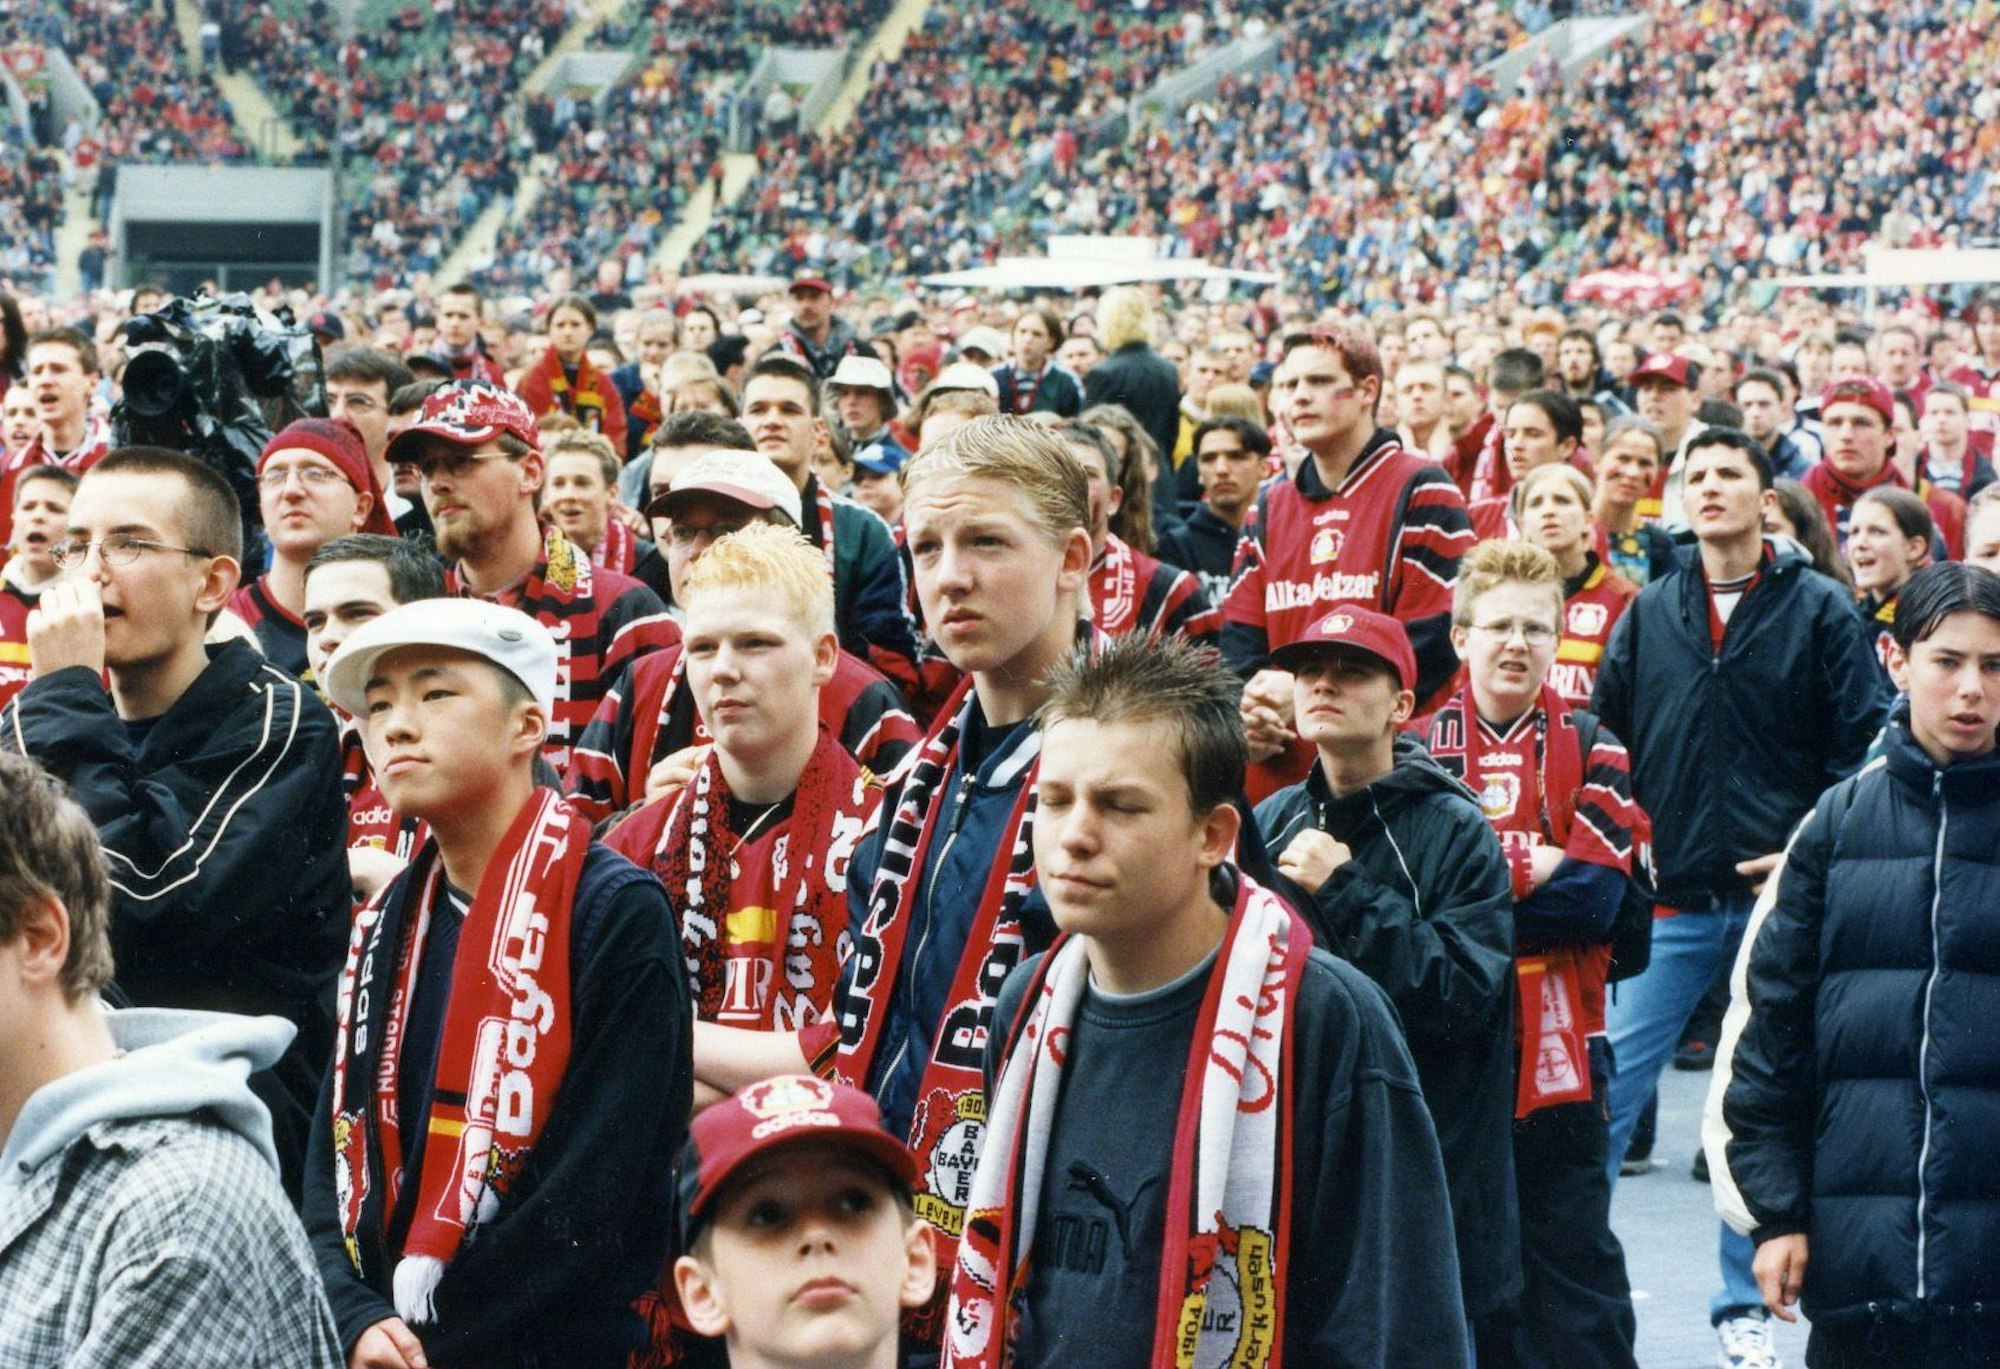 Letztes Spielwochenende im Jahr 2000, Bayer 04 verliert gegen Unterhaching, Public-Viewing im Stadion. Foto: Holger Schmitt